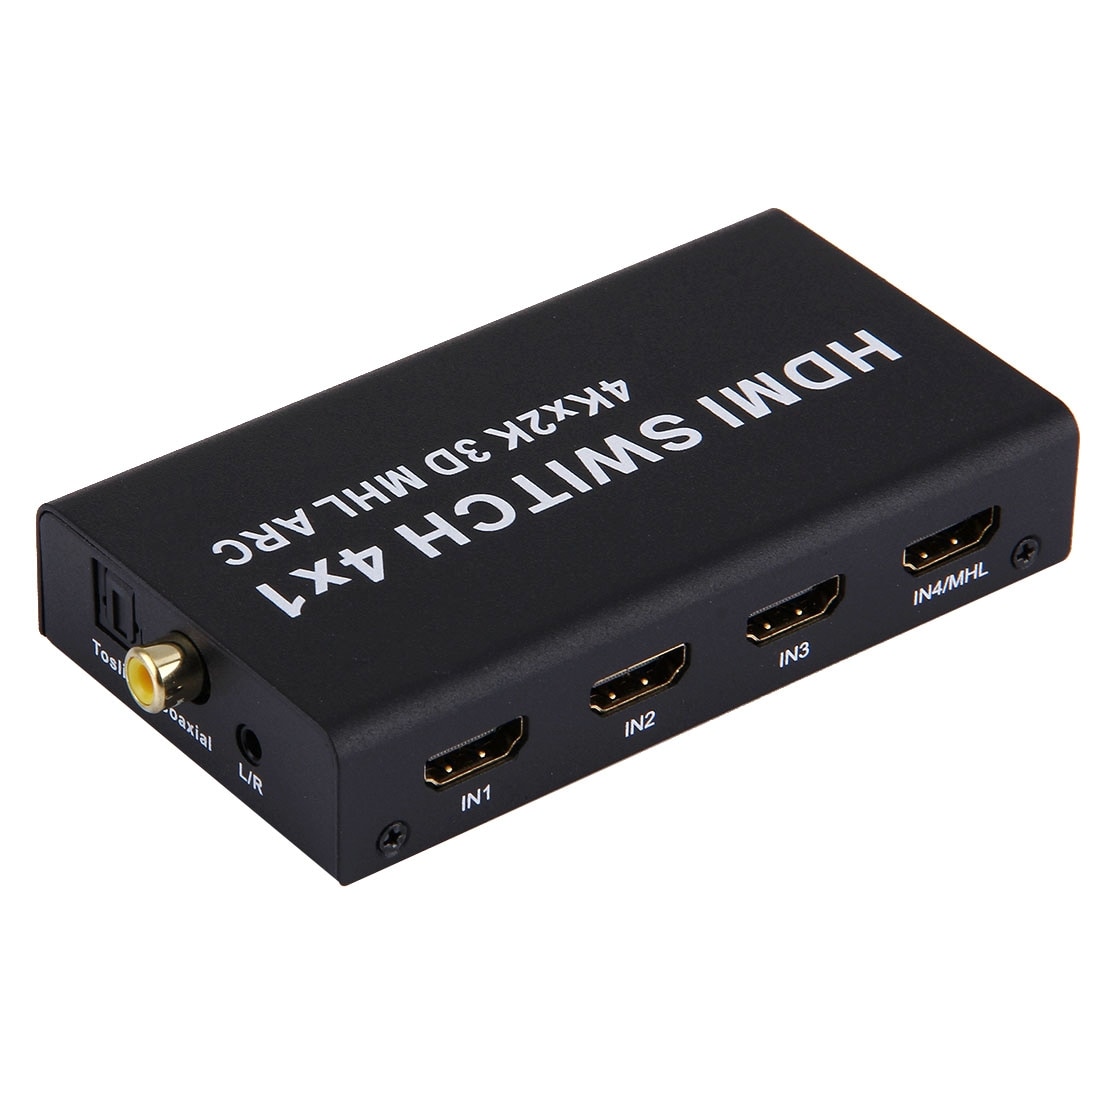 HDMI 4K 4x1 Monitoiminen Switch - ARC / MHL - Kaukosäädin mukana